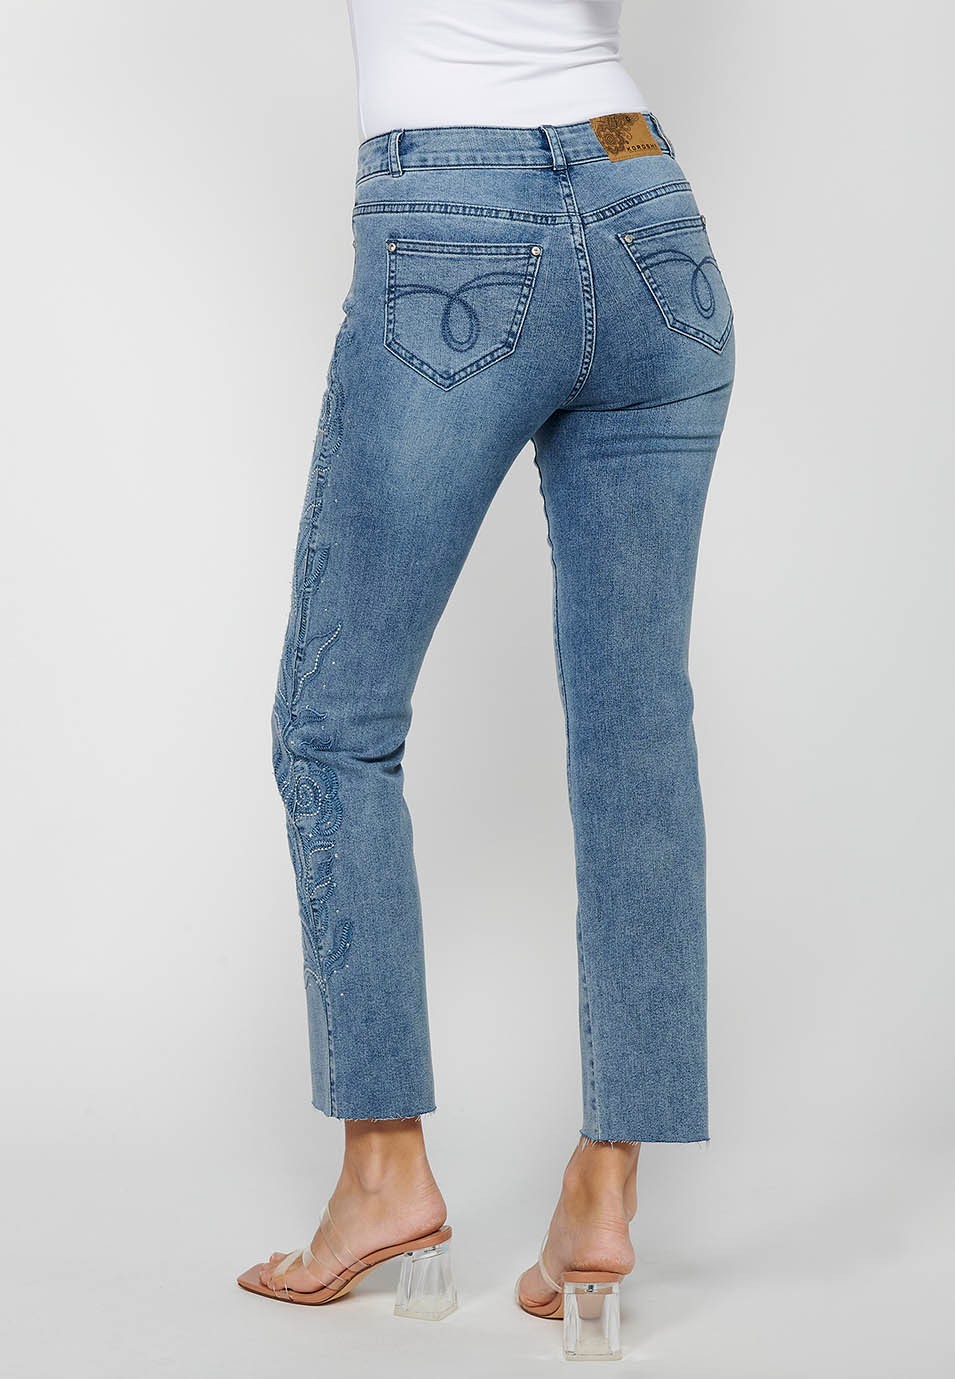 Pantalon long évasé en jean avec fermeture éclair sur le devant et détails brodés de fleurs bleu clair pour femme 5